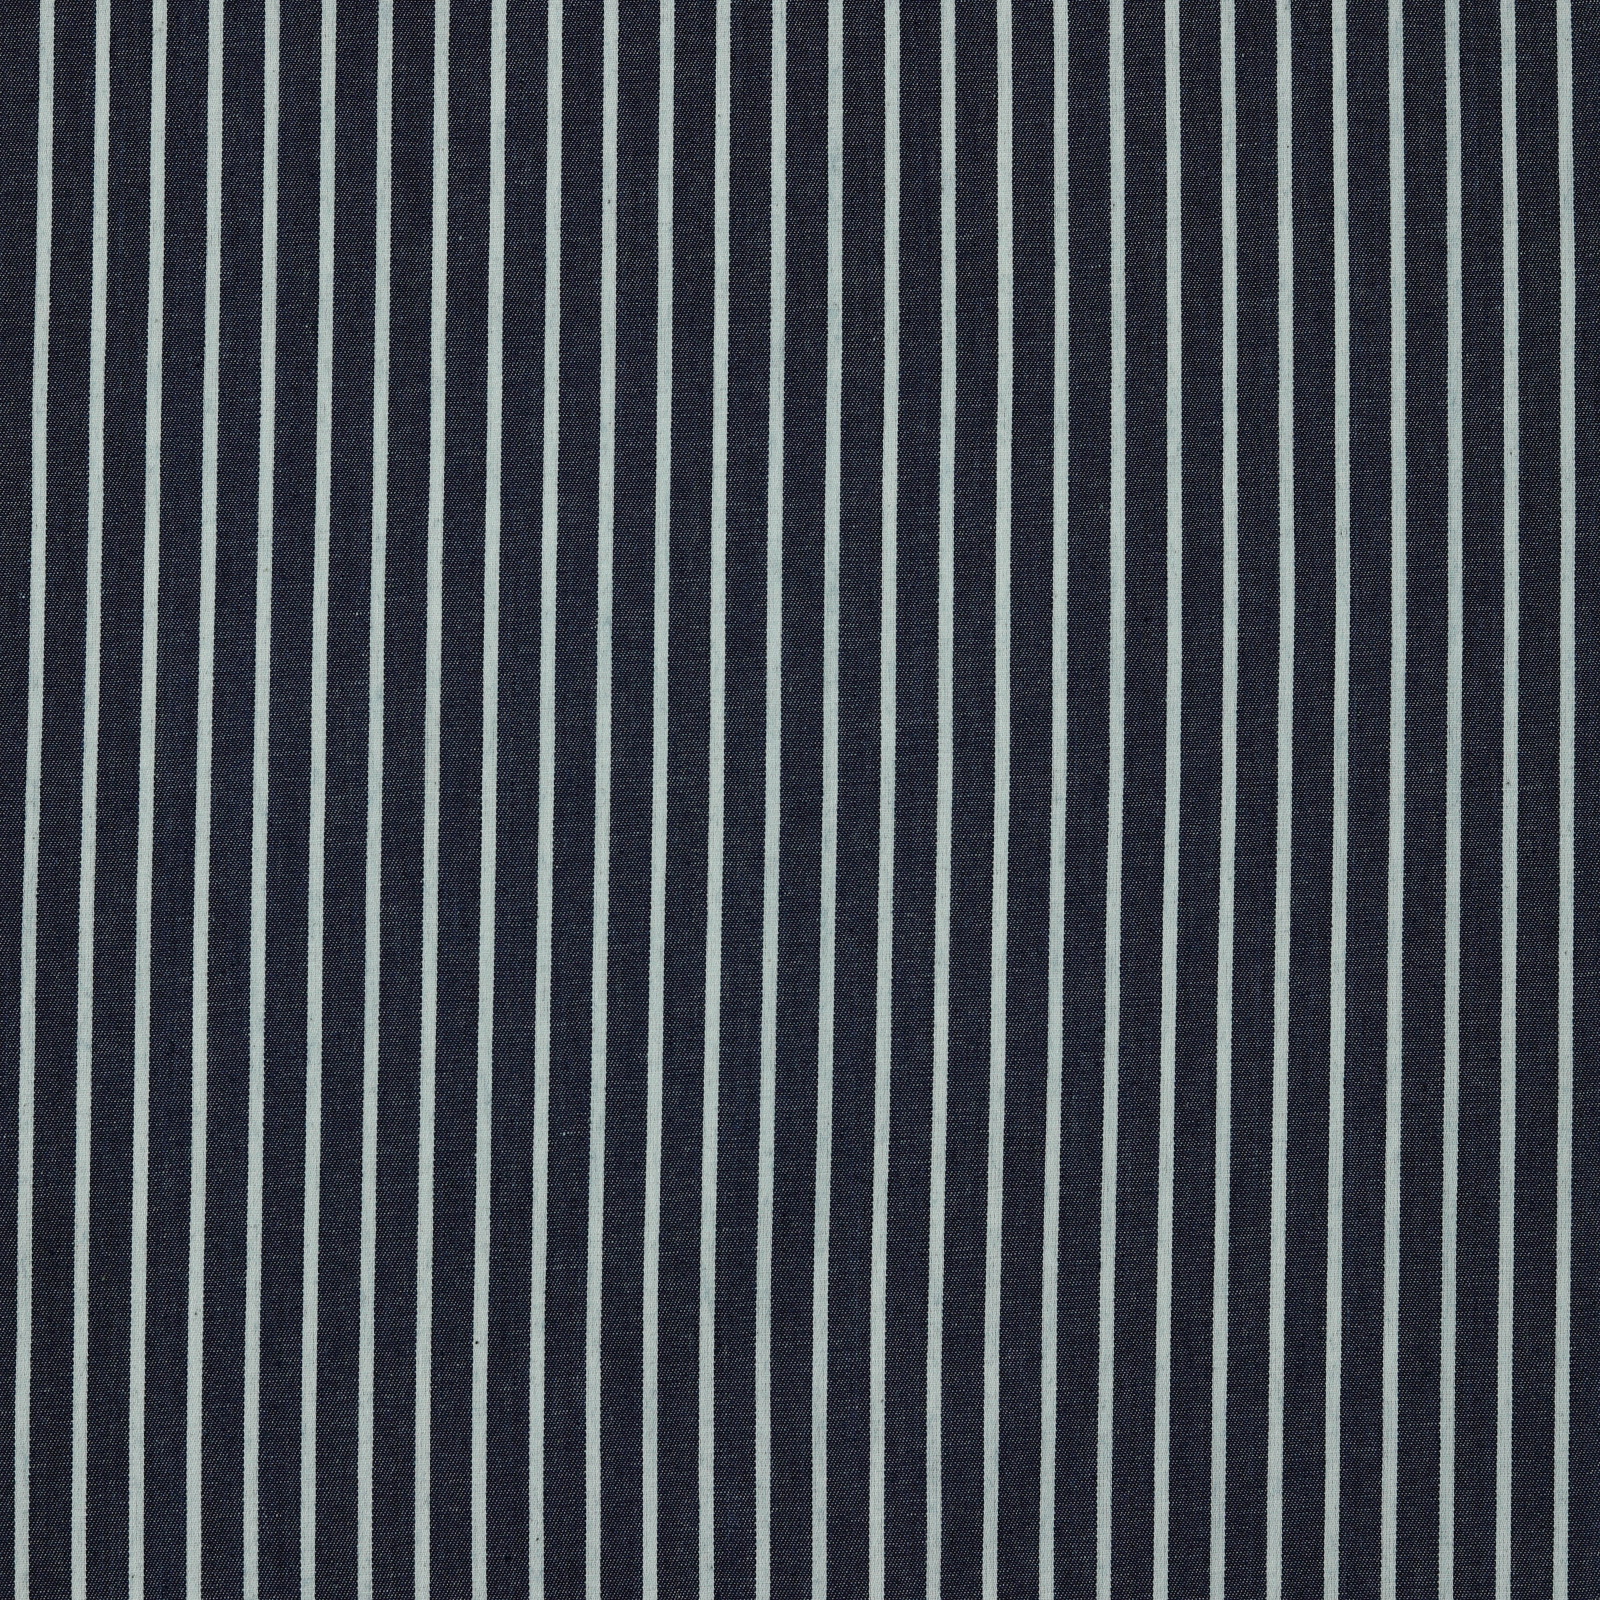 Stoff Meterware Jeans Streifen 3-8 mm Dunkelblau